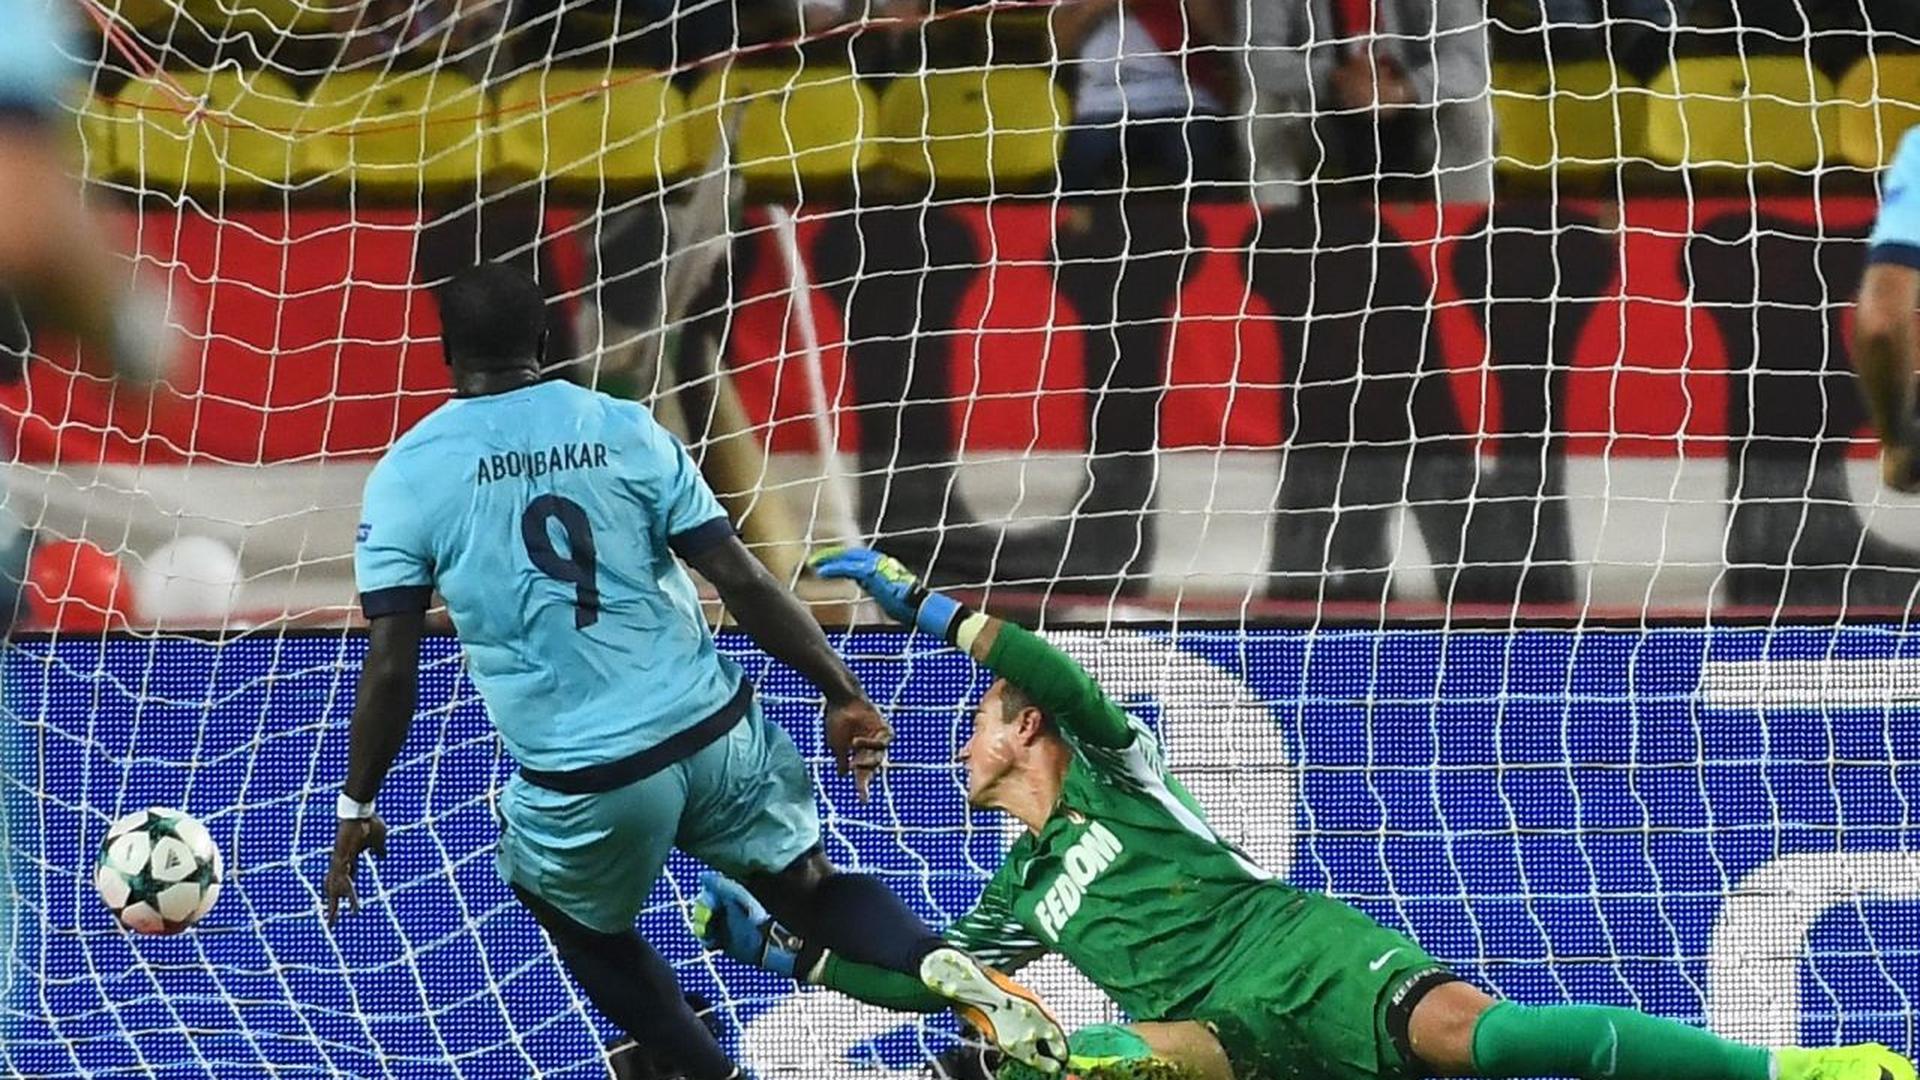 Aboubakar a fait très mal à la défense de Monaco en inscrivant les deux premiers buts de Porto.